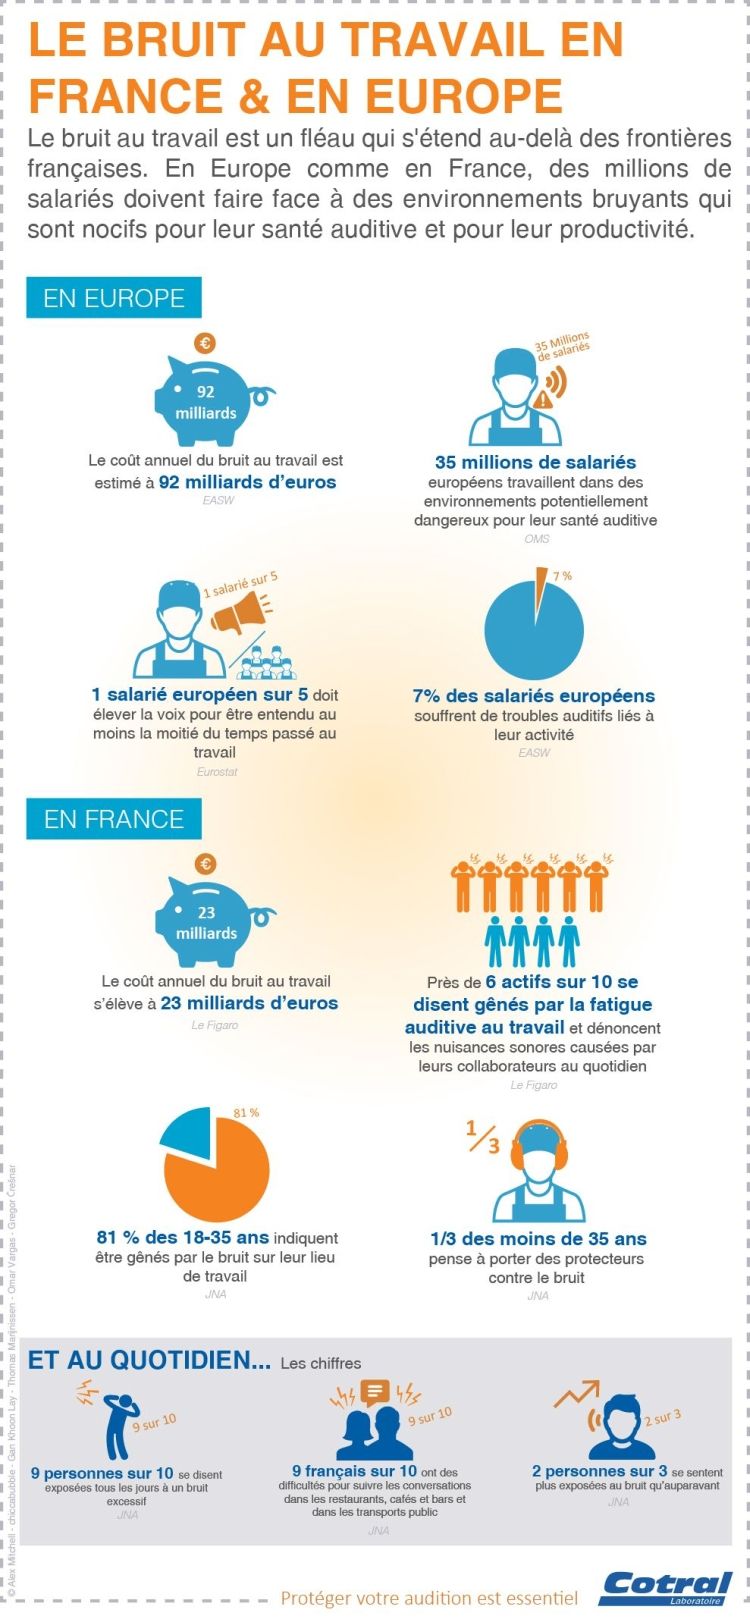 Infographie sur le bruit au travail en France et en Europe